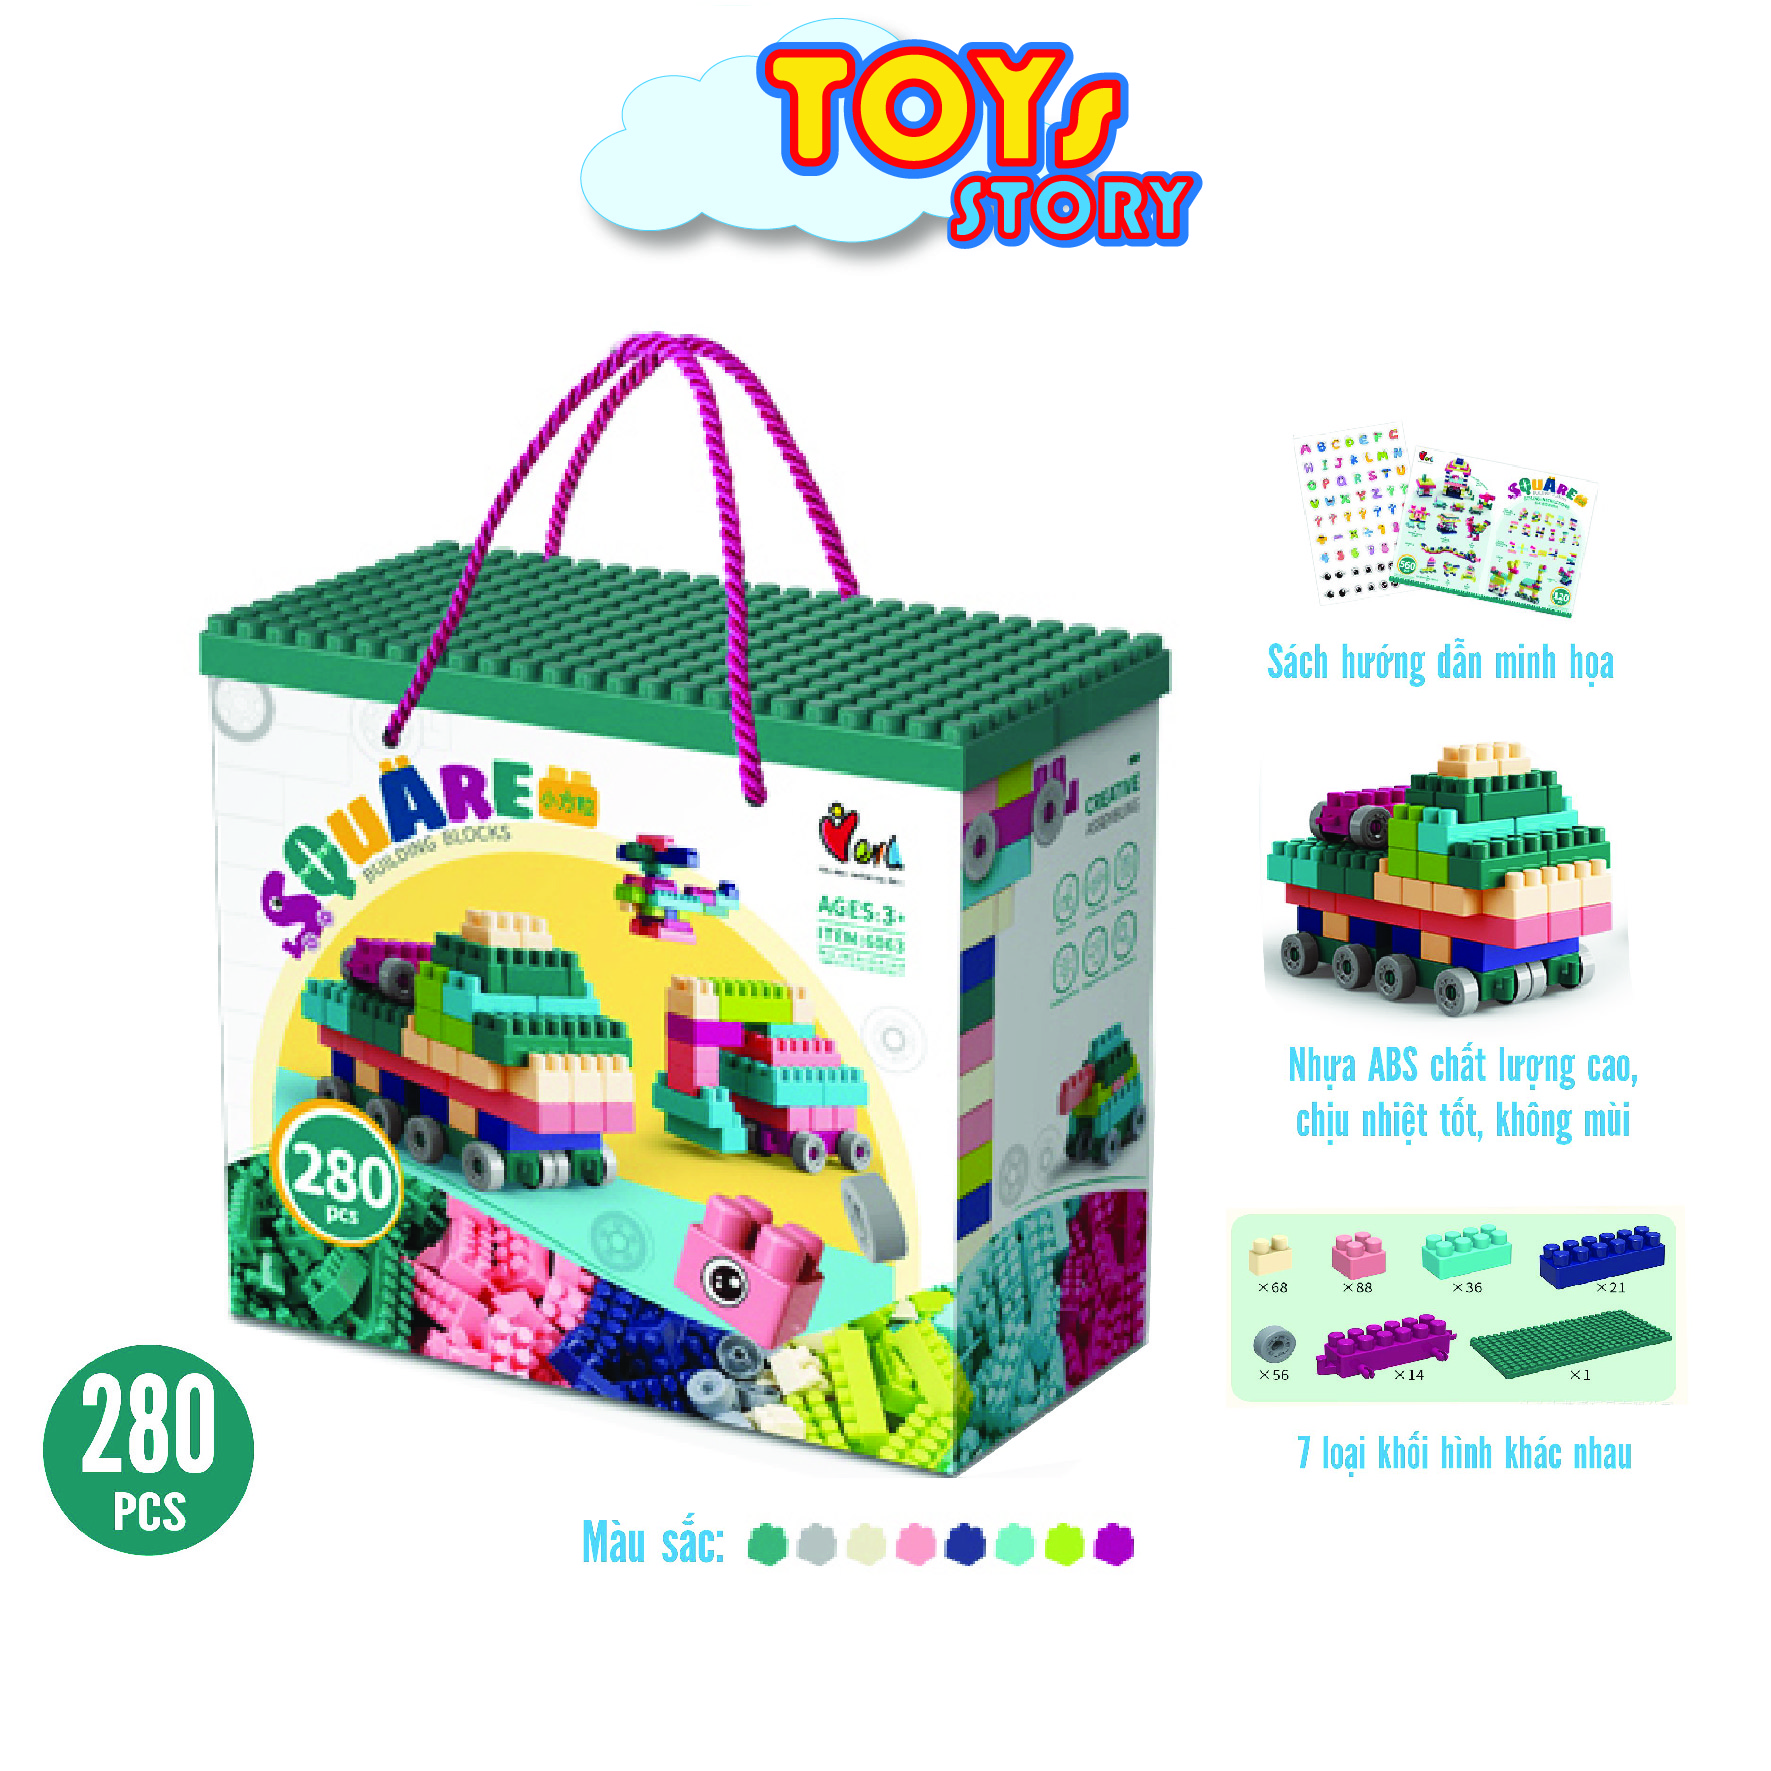 Bộ Lego Ghép hình 560 Chi tiết Toys Story Đồ chơi cho bé từ 3-7 tuổi